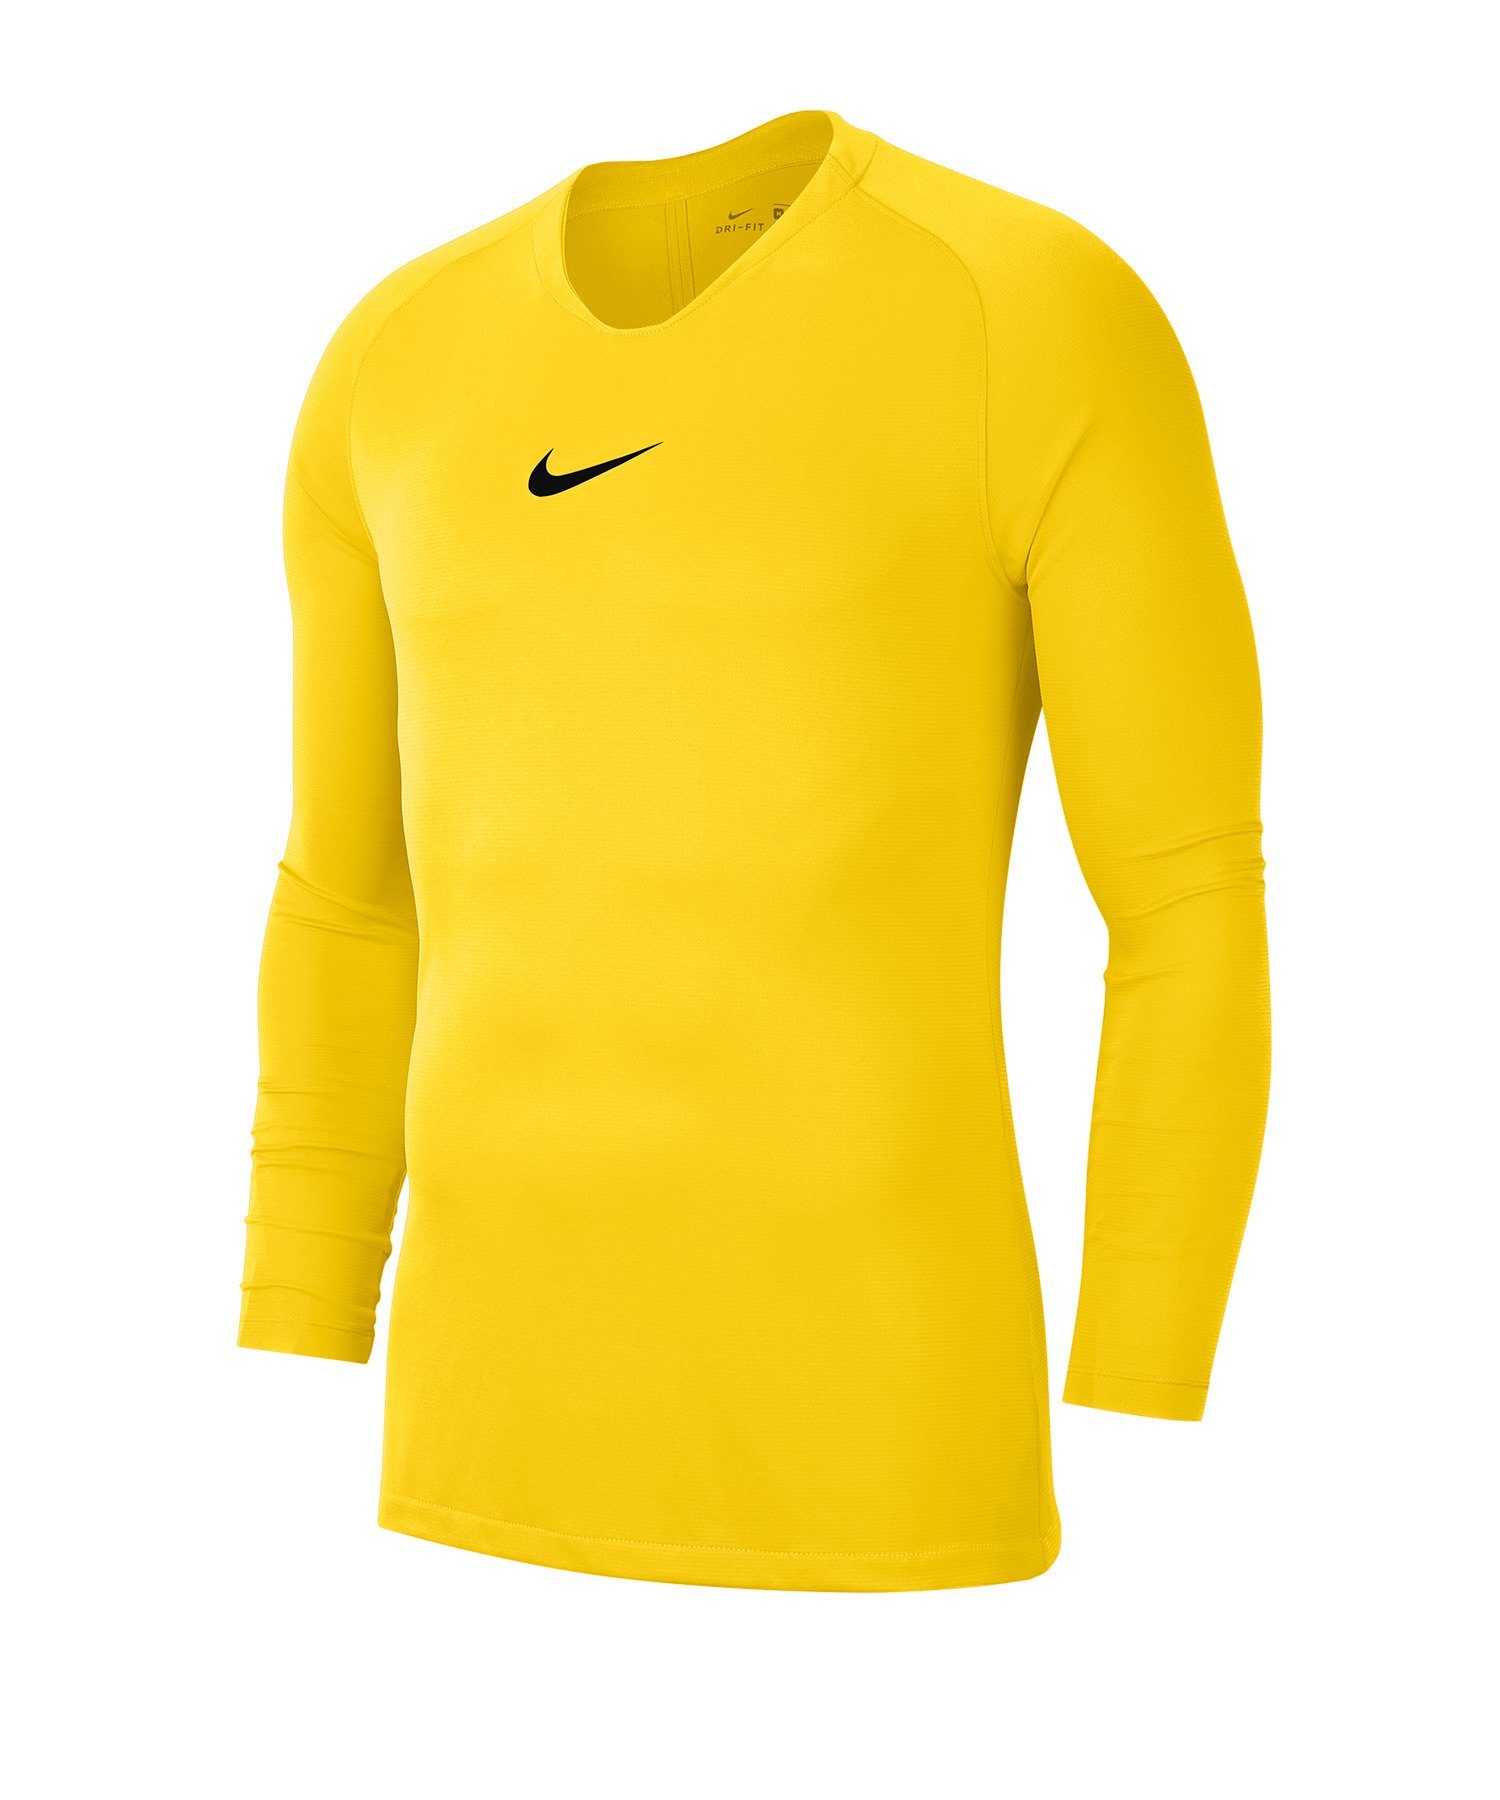 Nike Funktionsshirt Park First gelb Daumenöffnung Top Layer Kids